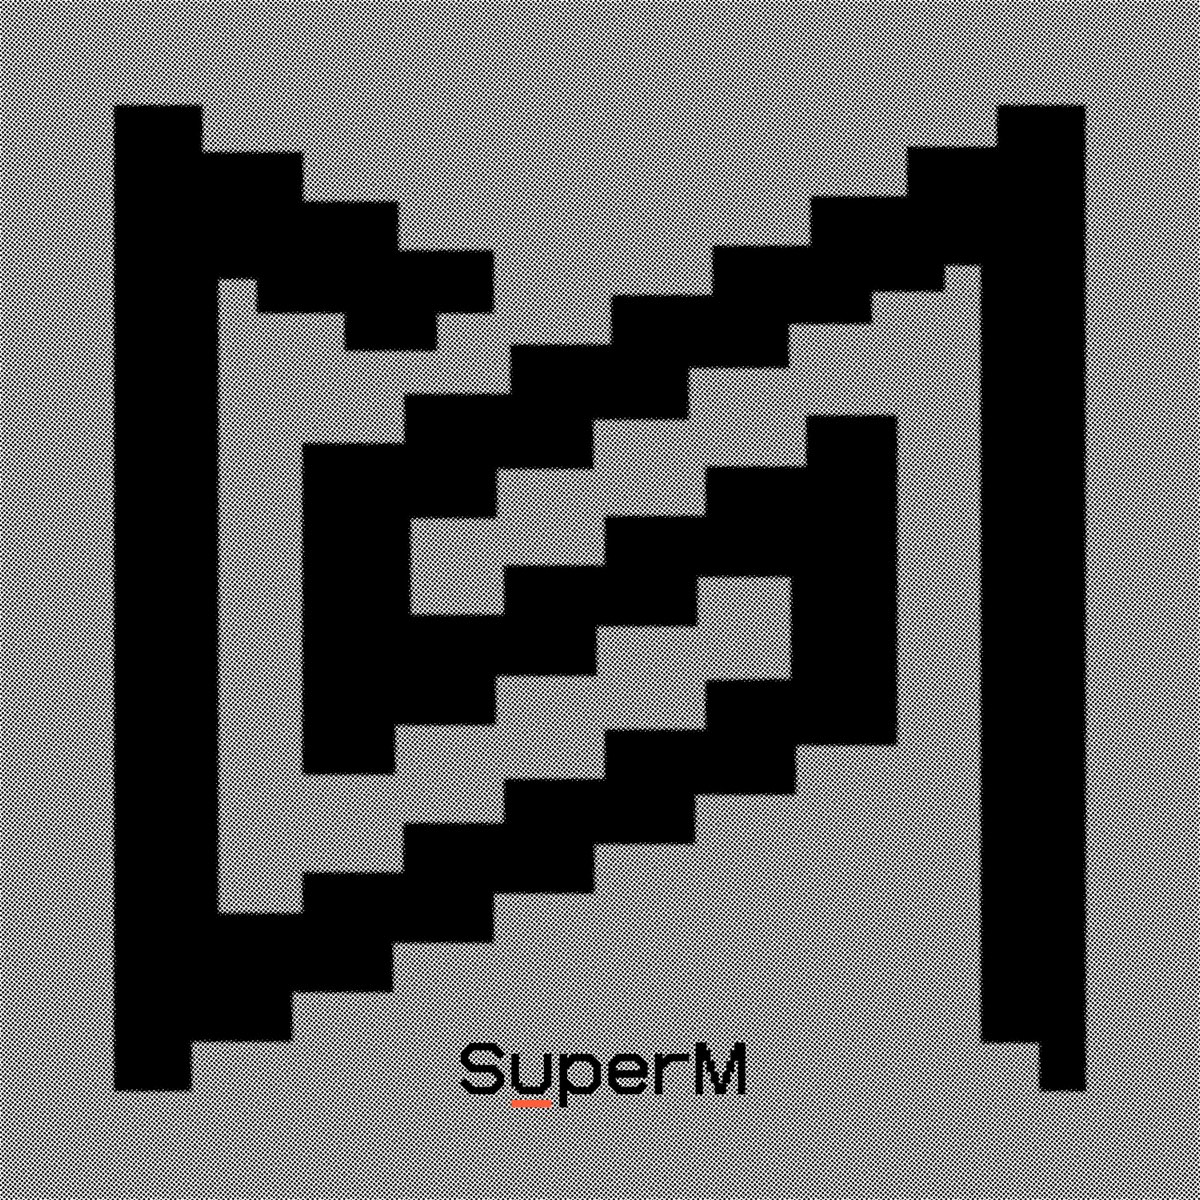 SuperM — Dangerous Woman cover artwork